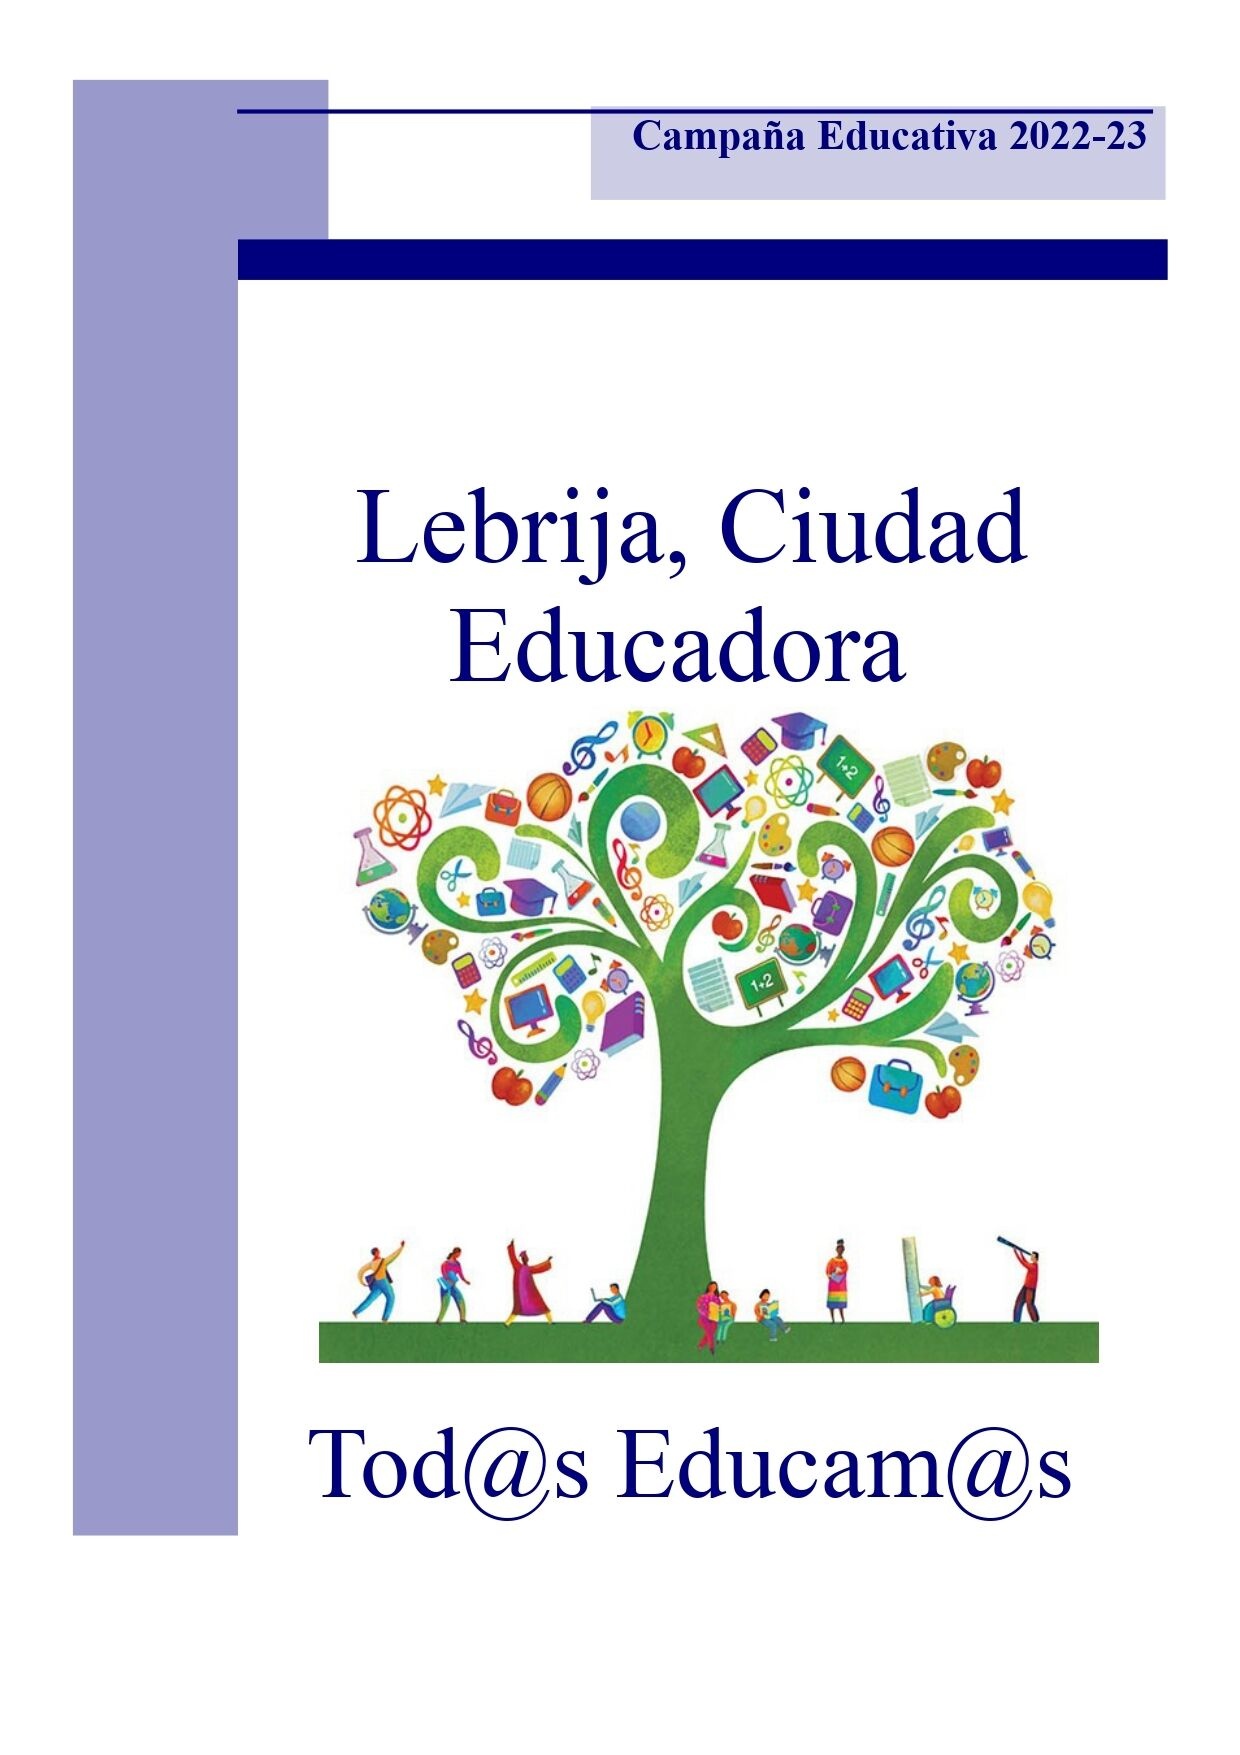 Presentación campaña Lebrija educa (2)